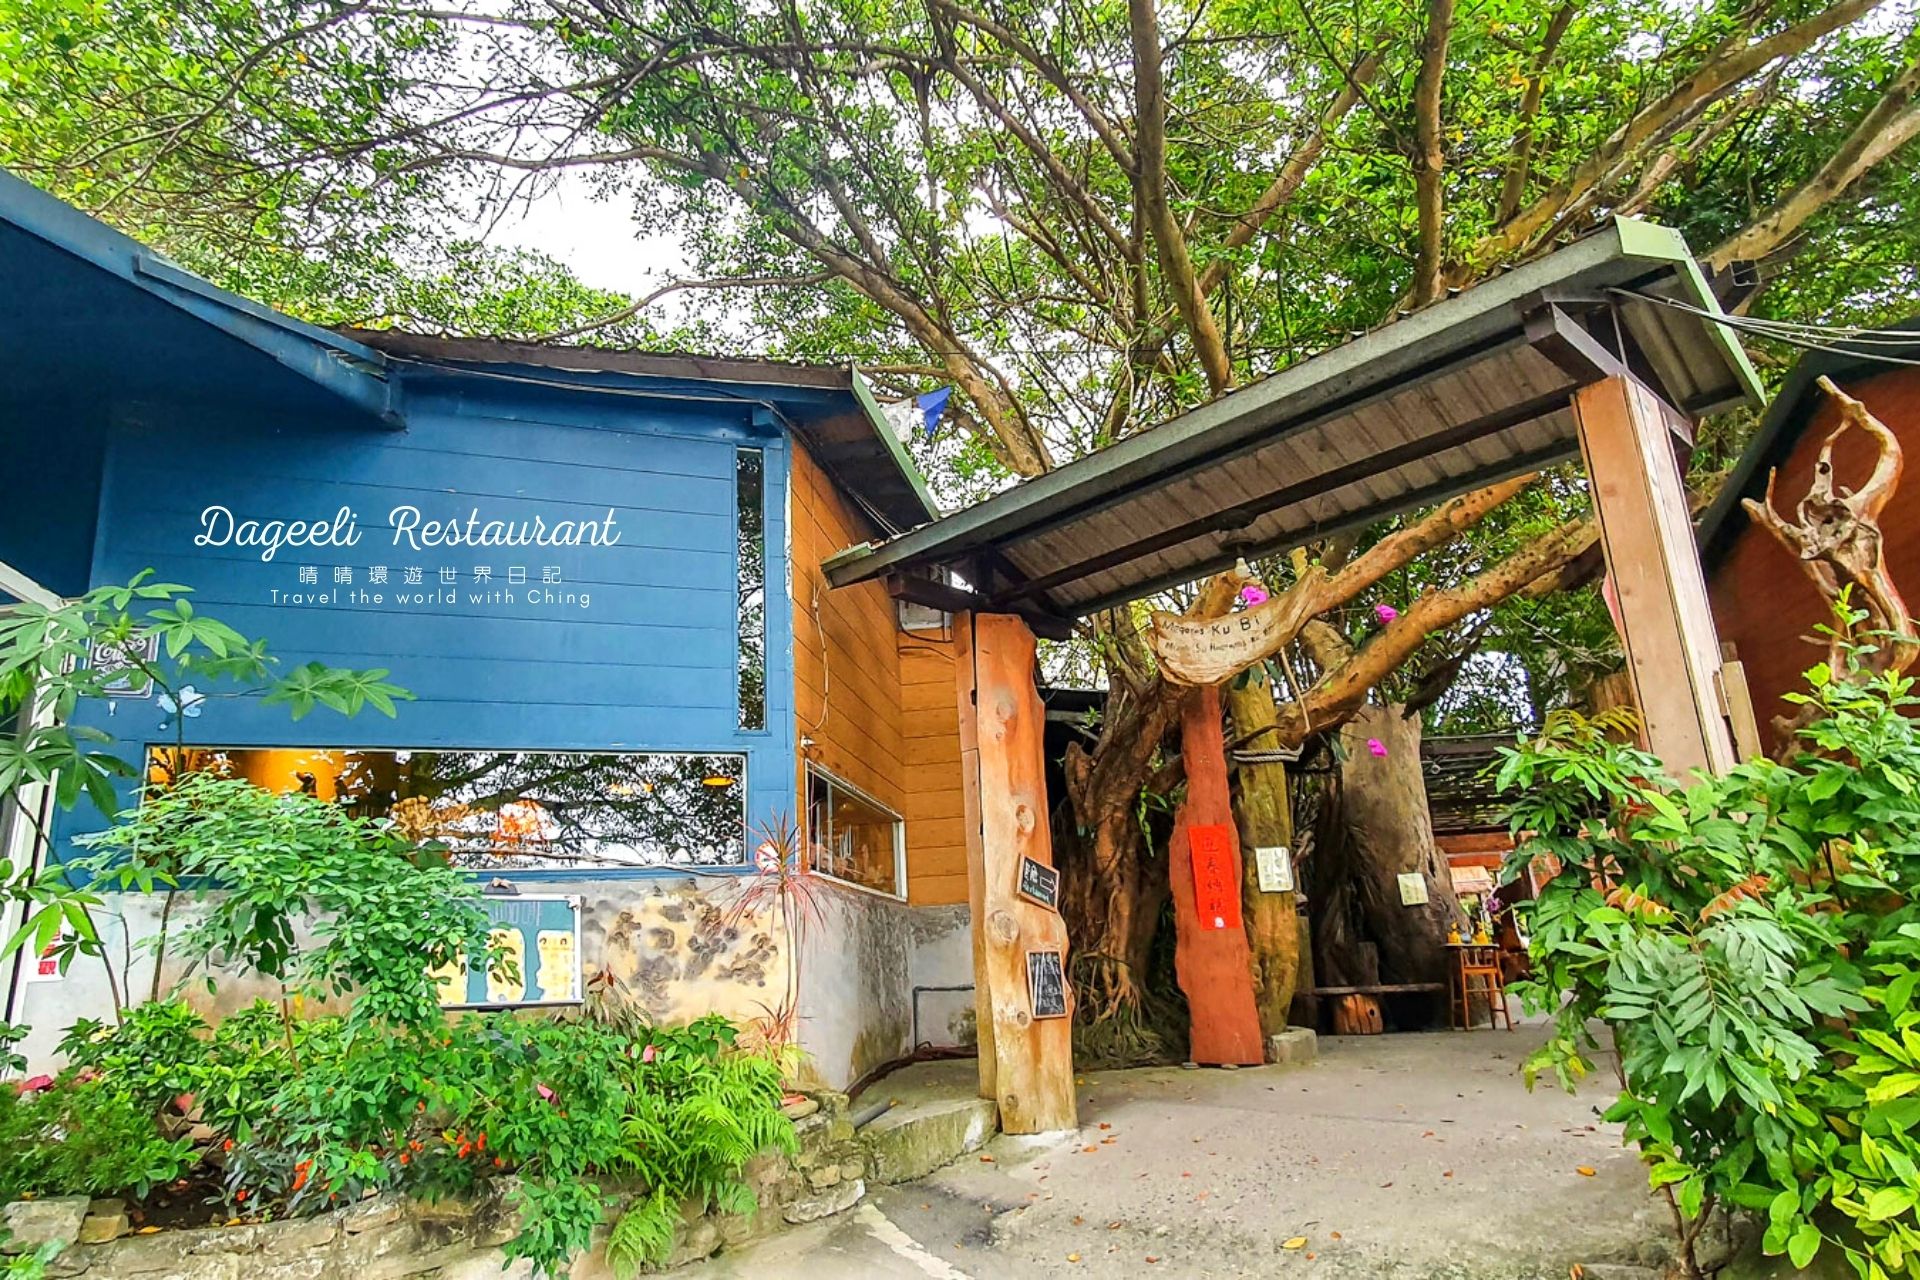 達基力部落屋大門，這個利用綠樹、漂流木蓋起的戶外餐廳空間，像是藏於叢林一般，充滿原始森林的氣息。